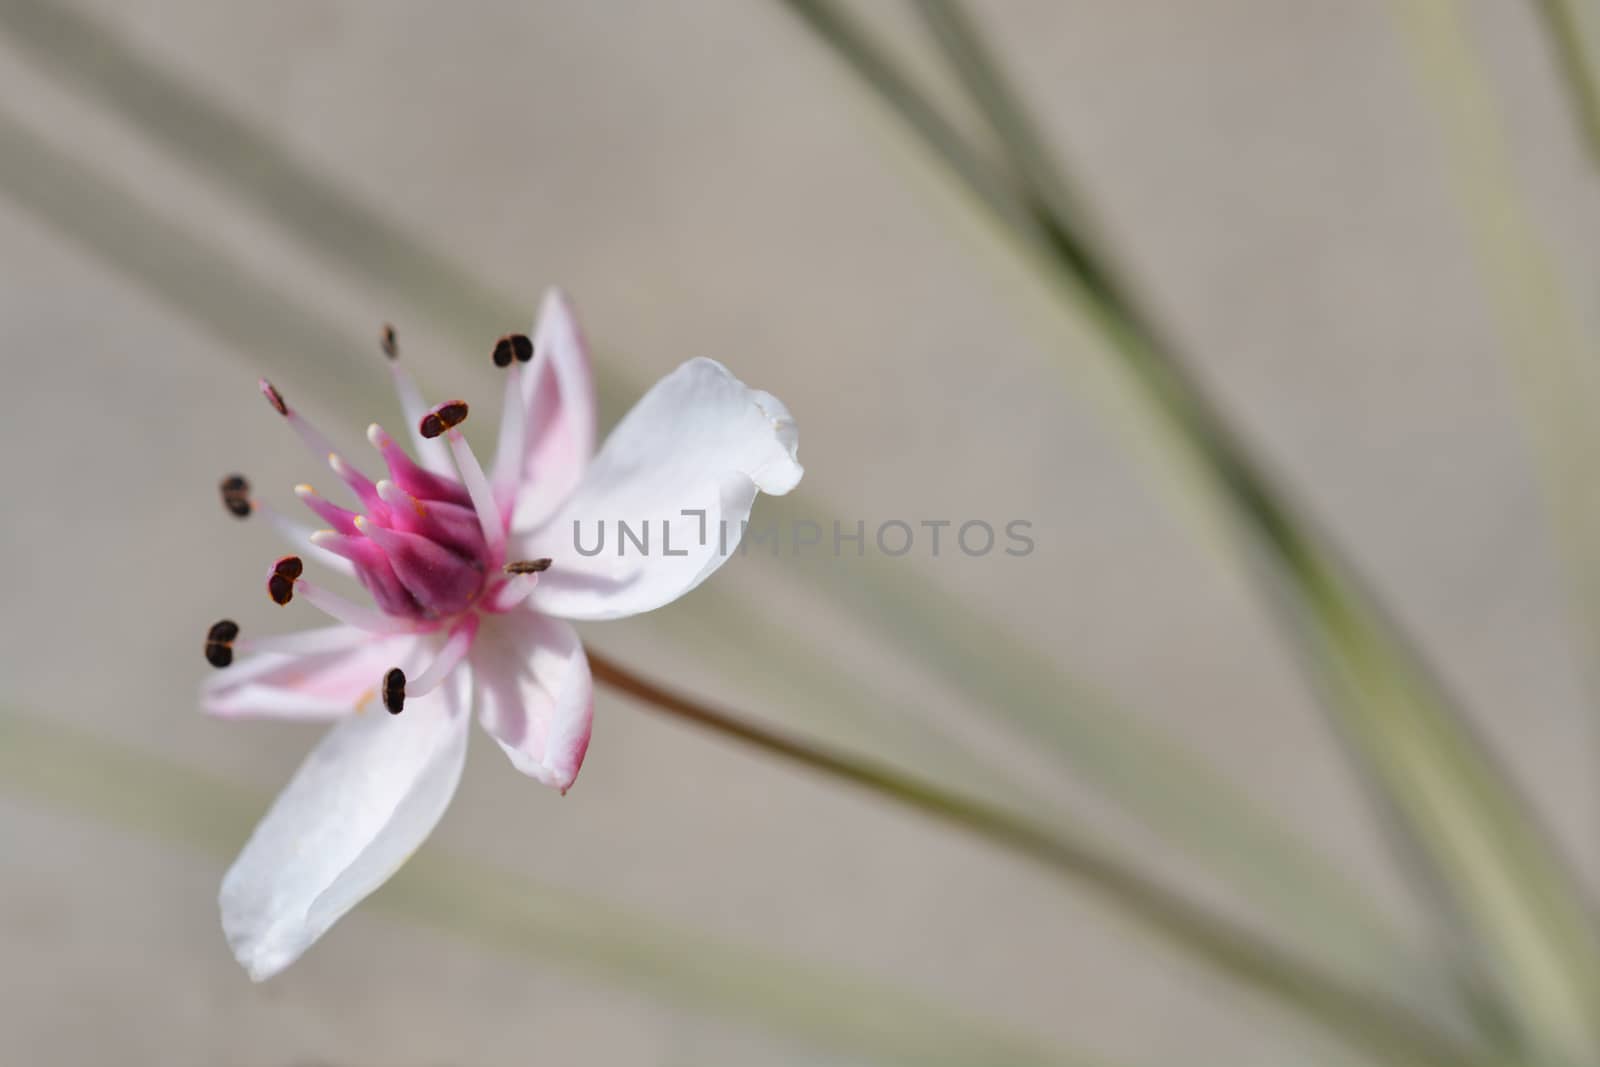 Flowering rush - Latin name - Butomus umbellatus